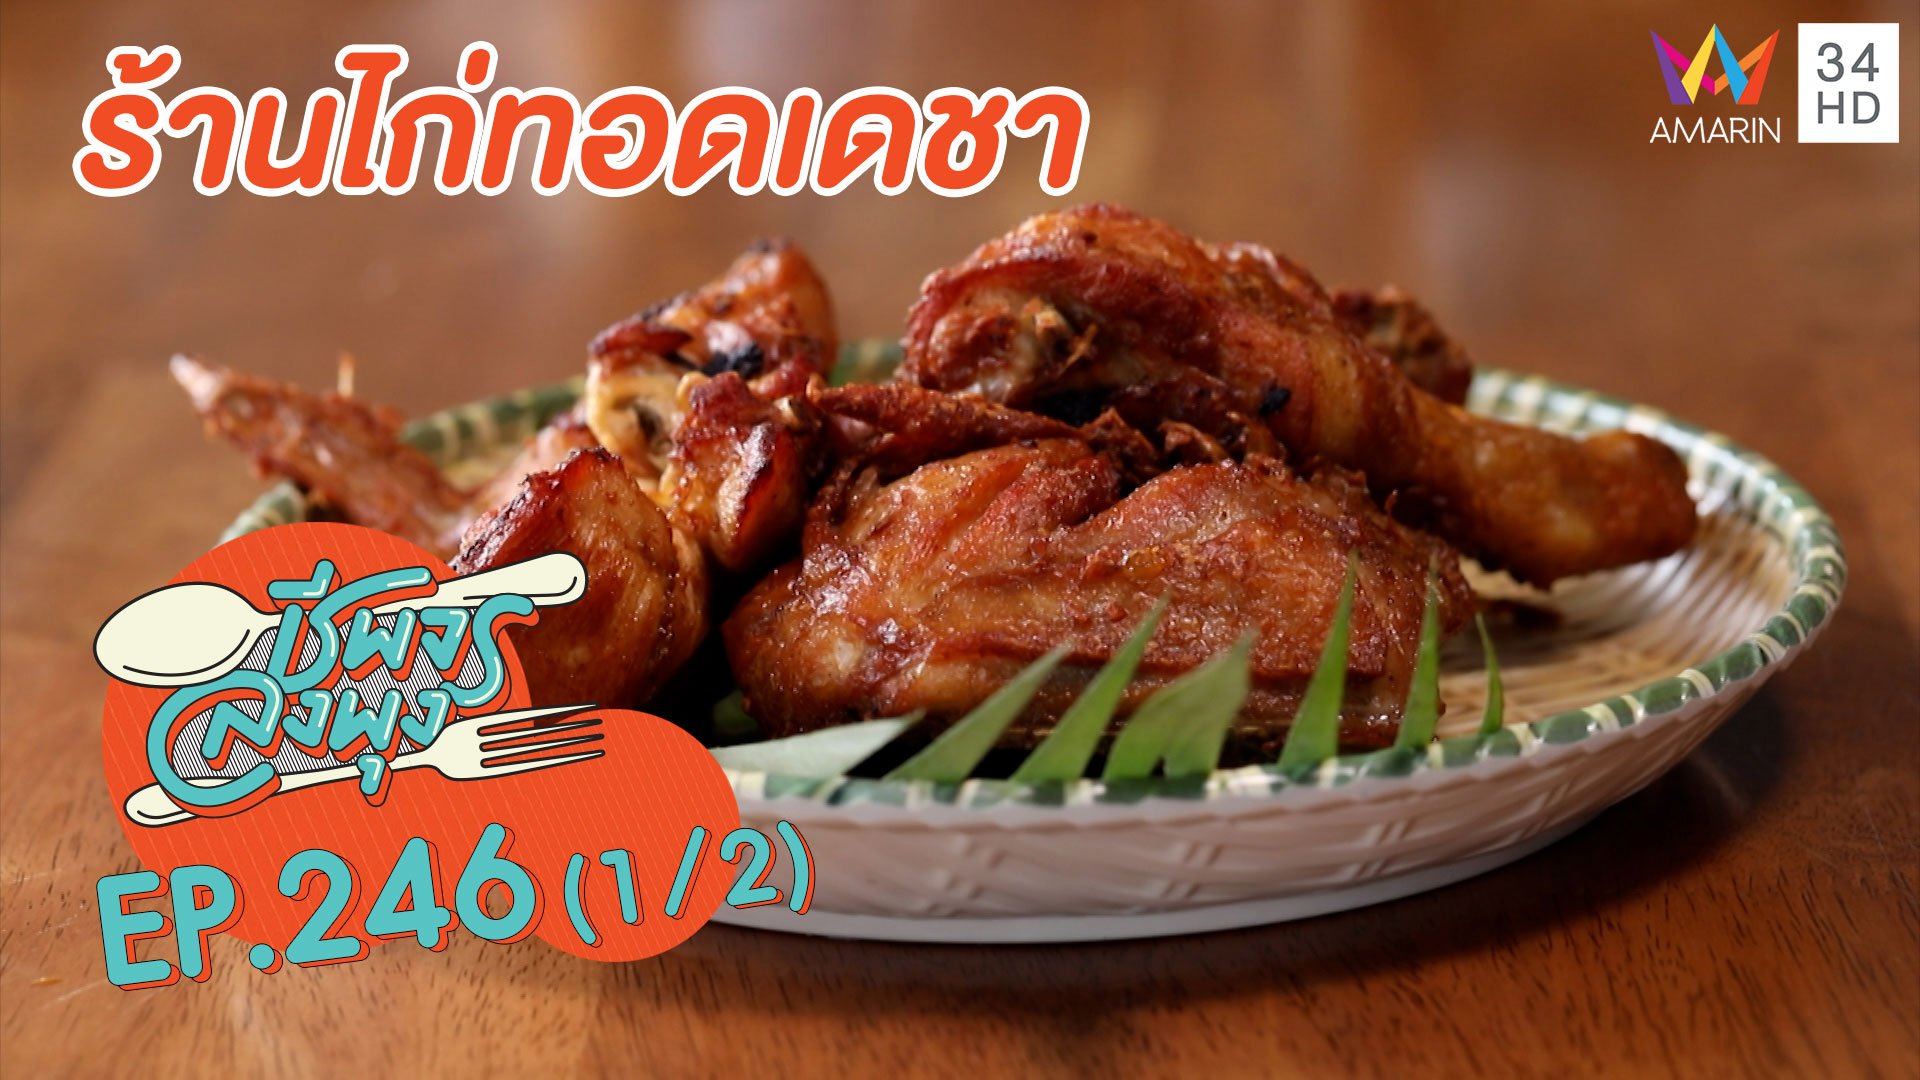 ไก่ทอดหาดใหญ่รสดั้งเดิม 'ร้านไก่ทอดเดชา' | ชีพจรลงพุง | 17 ต.ค. 63 (1/2) | AMARIN TVHD34